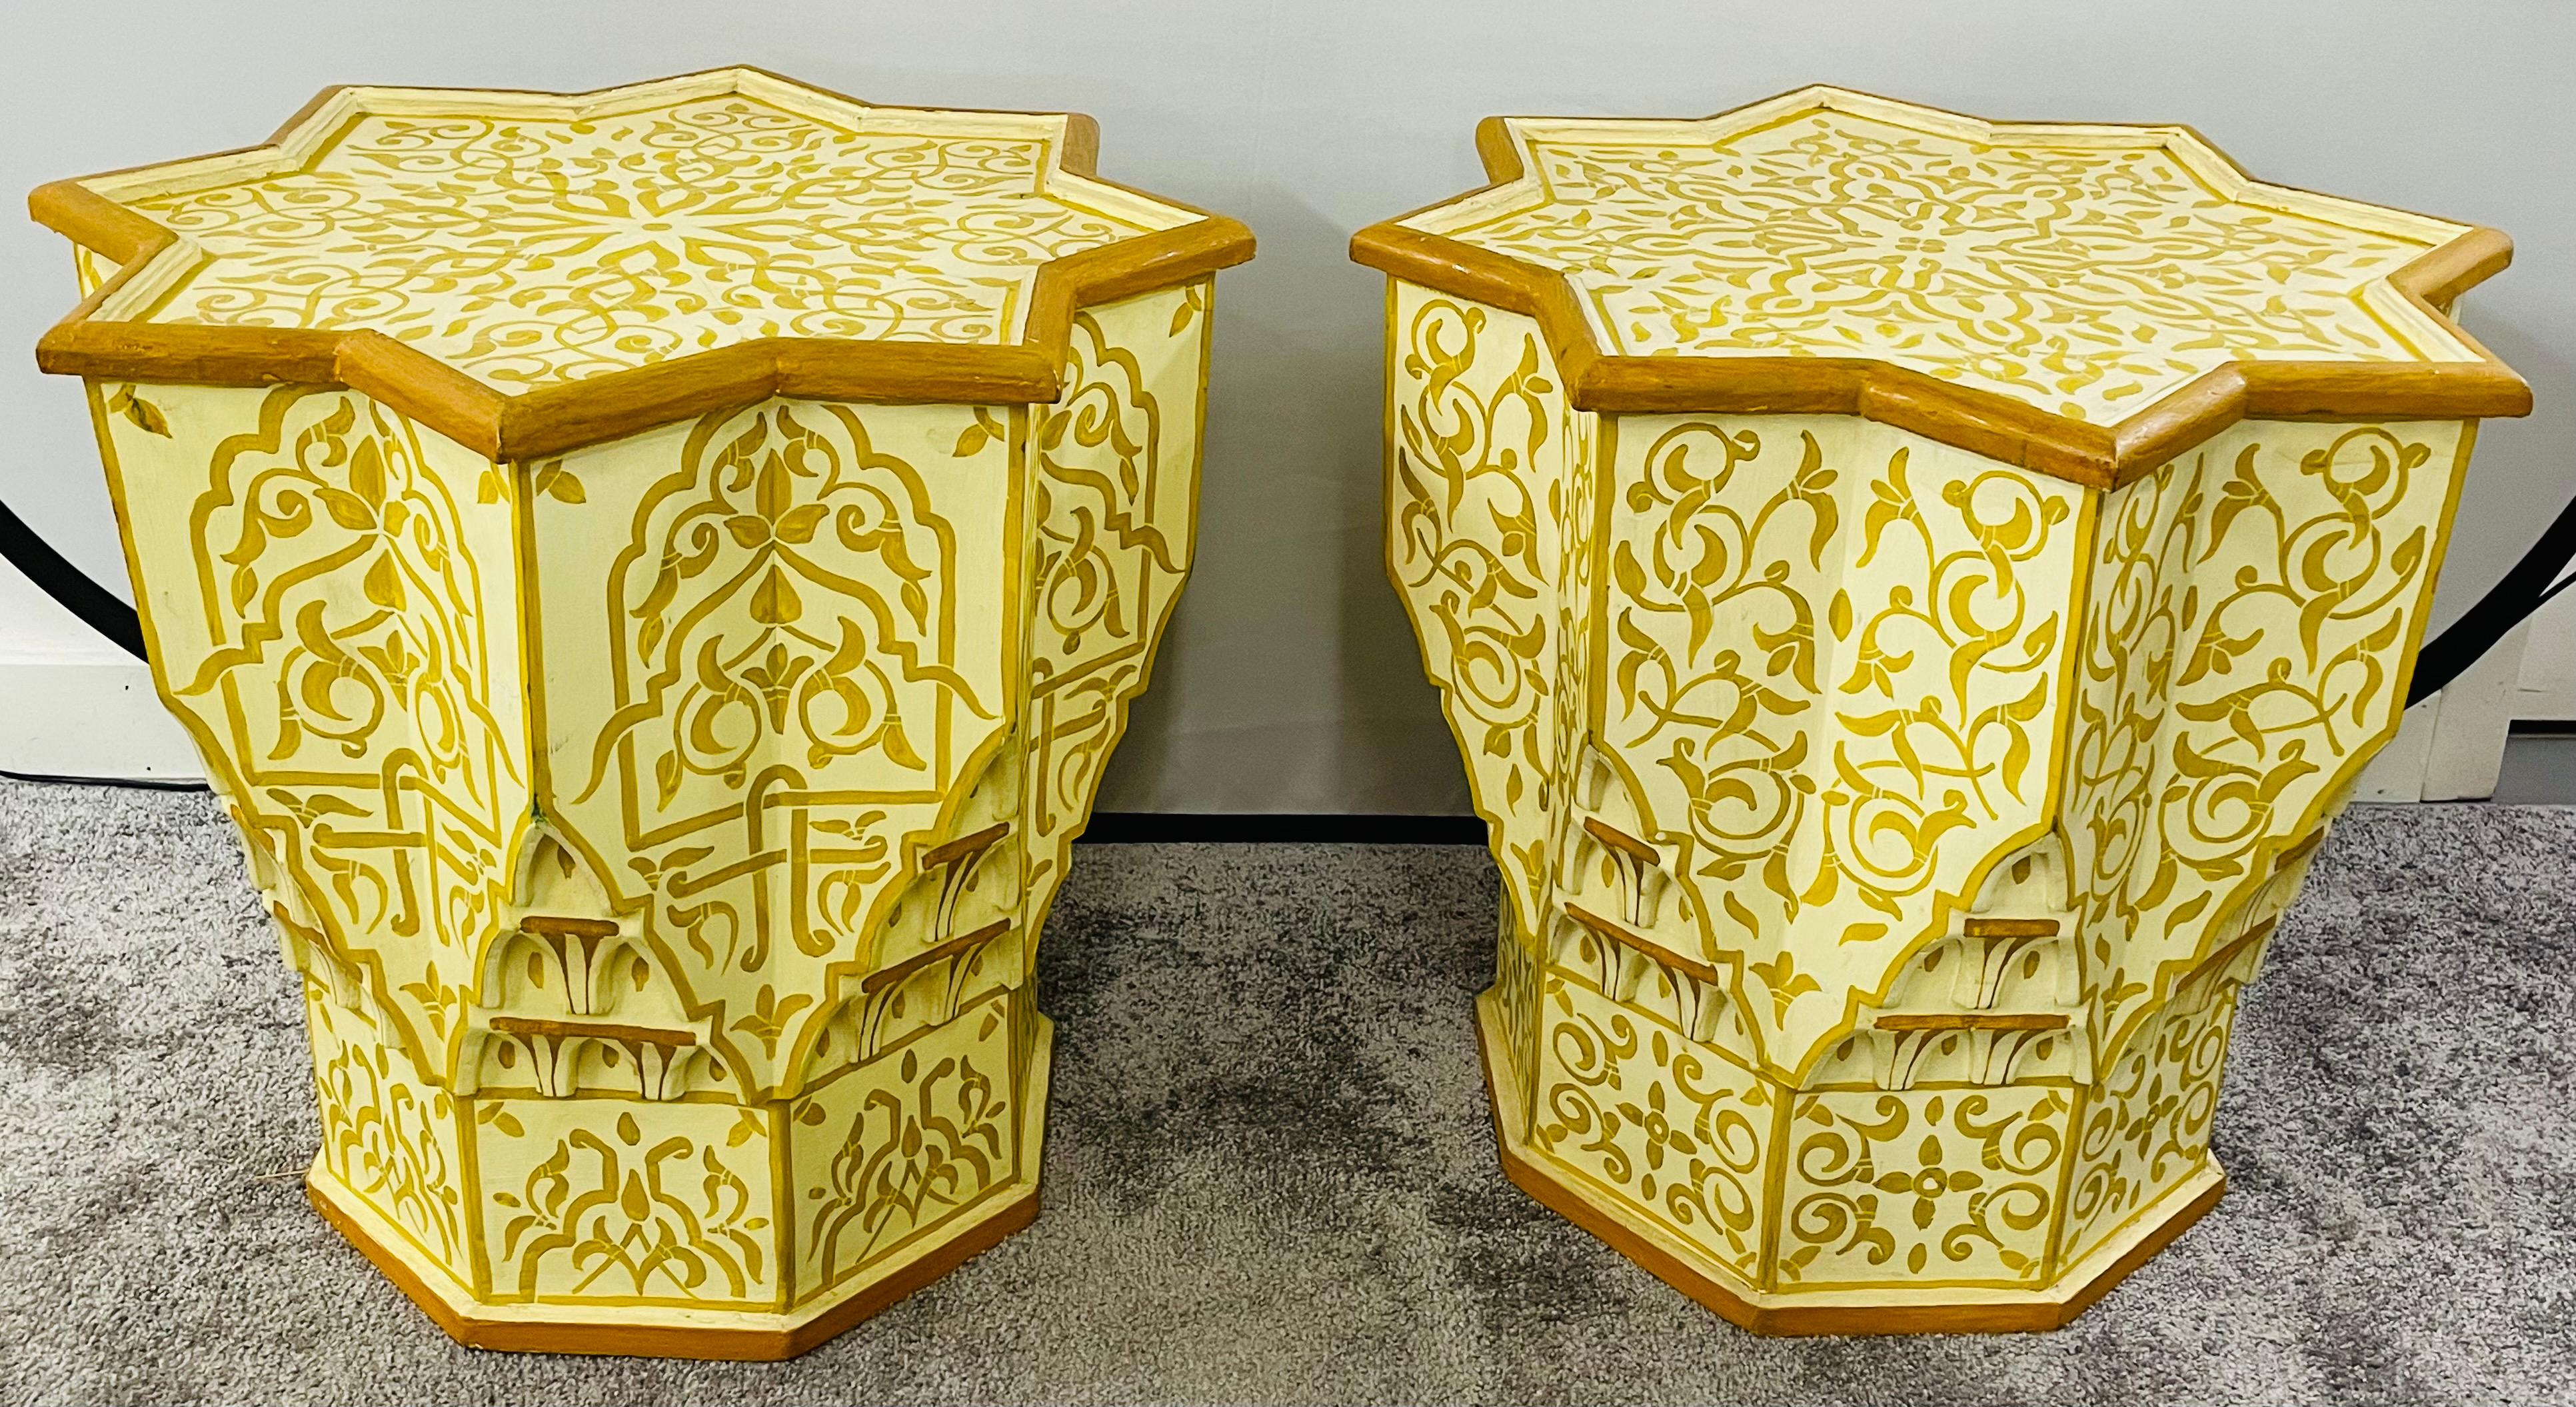 Eine exquisite Paar Vintage marokkanischen Hand gemalt Ende oder Beistelltische mit schönen Arabesken maurischen Motiven schmücken die volle Top und Seiten ion der Tabelle. Die Tischplatte ist sternförmig und die Seiten sind von Hand geschnitzt und